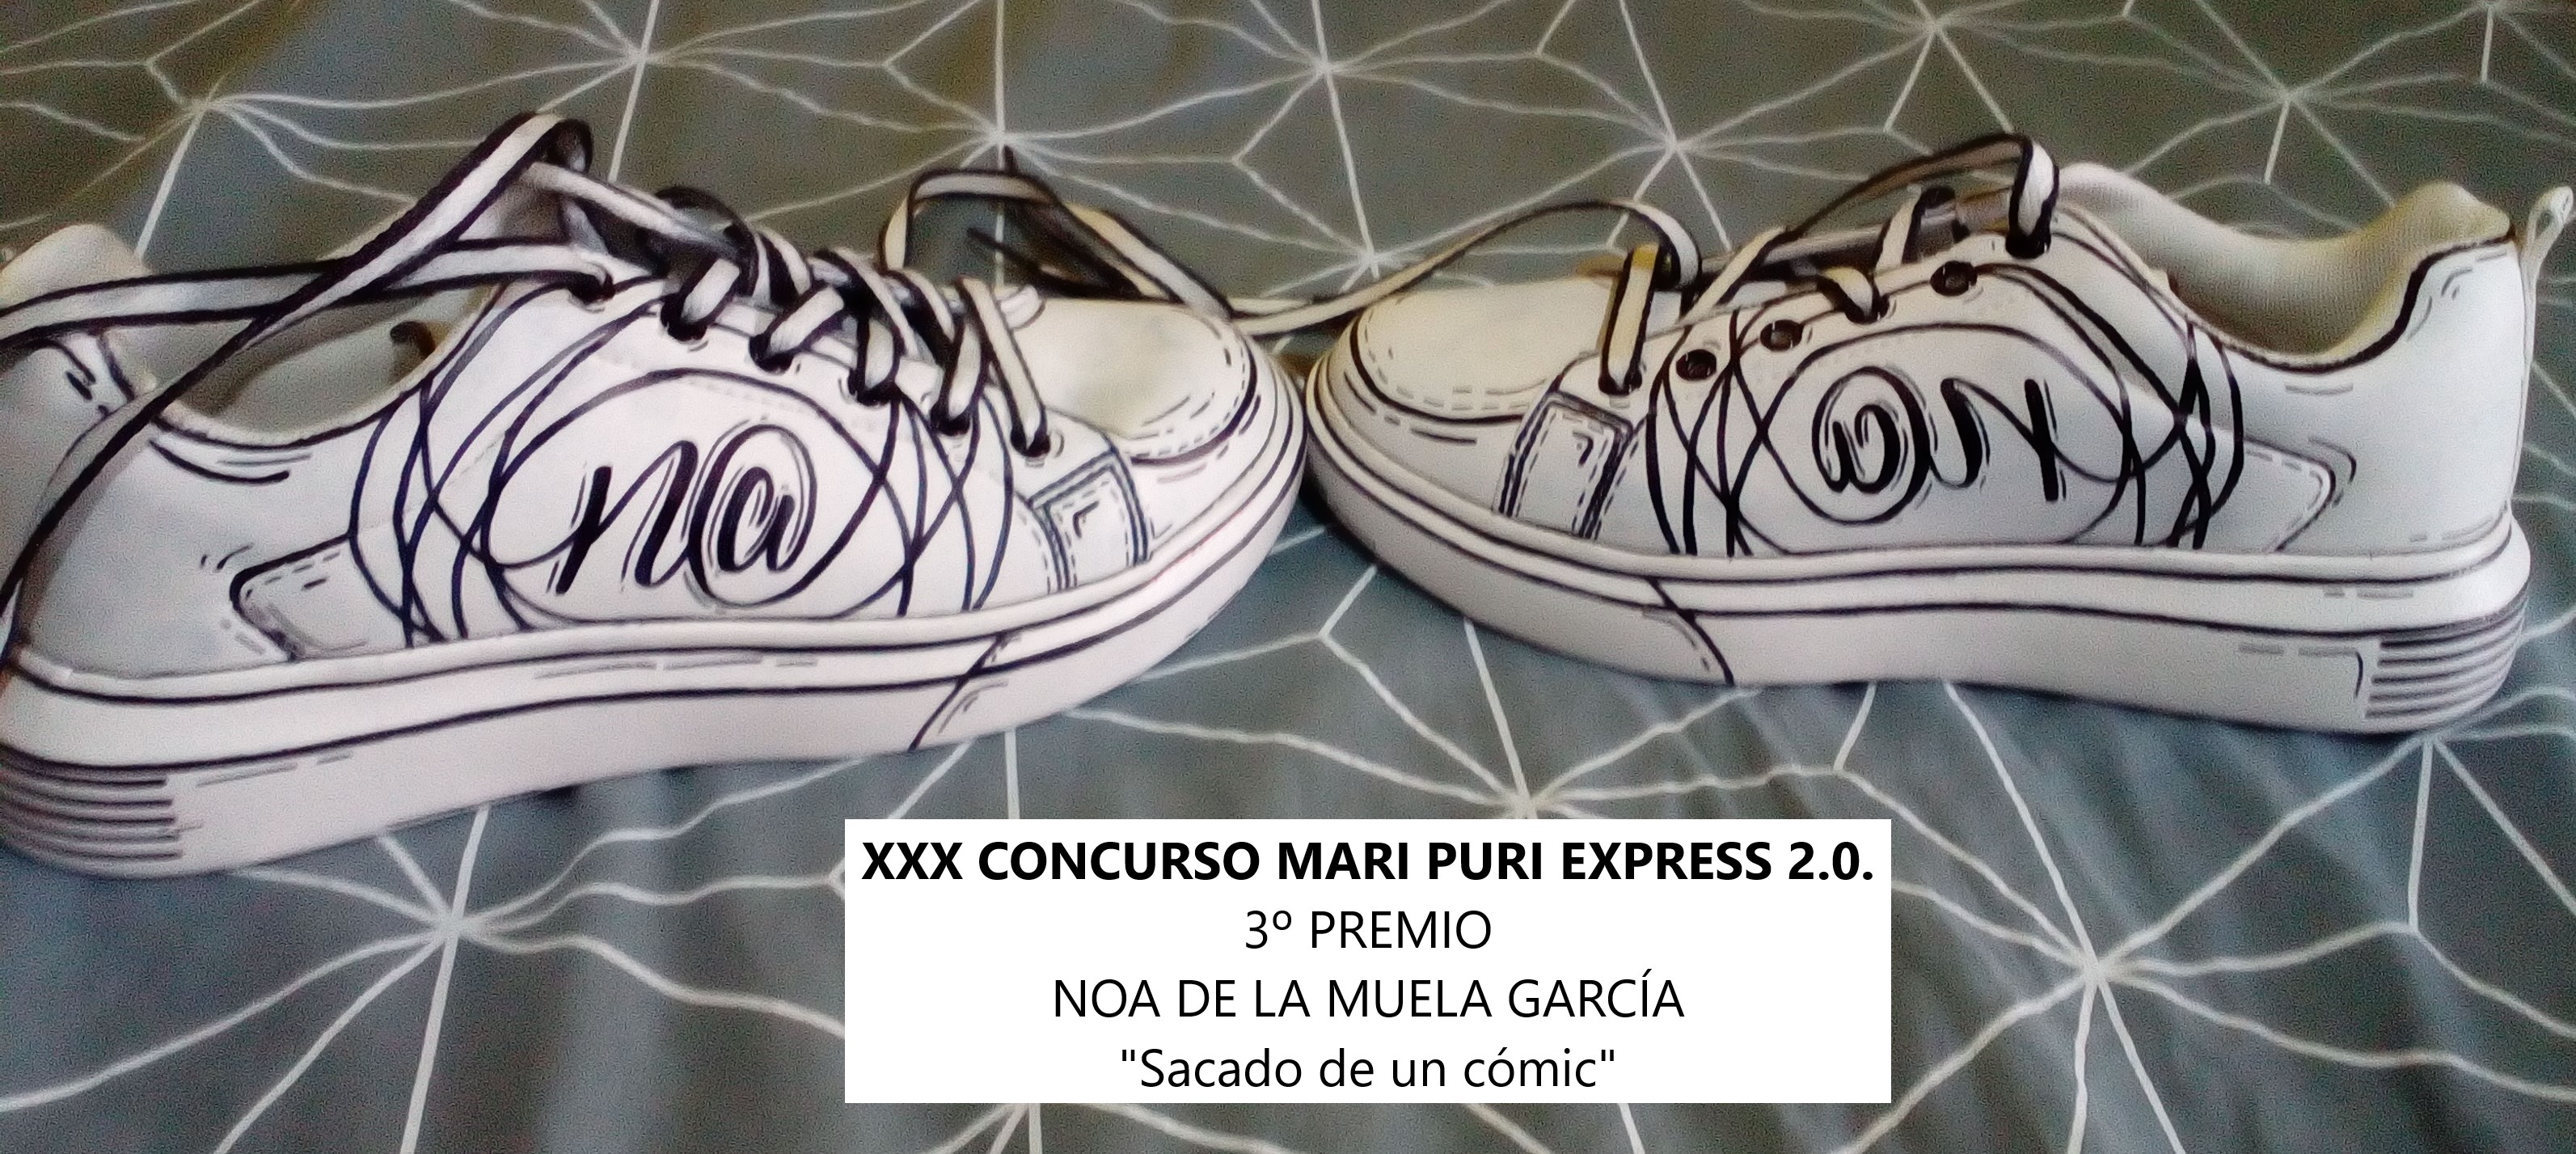 XXX concurso juvenil Mari Puri Express 2.0 - Customización zapatillas - Noa de la Muela García